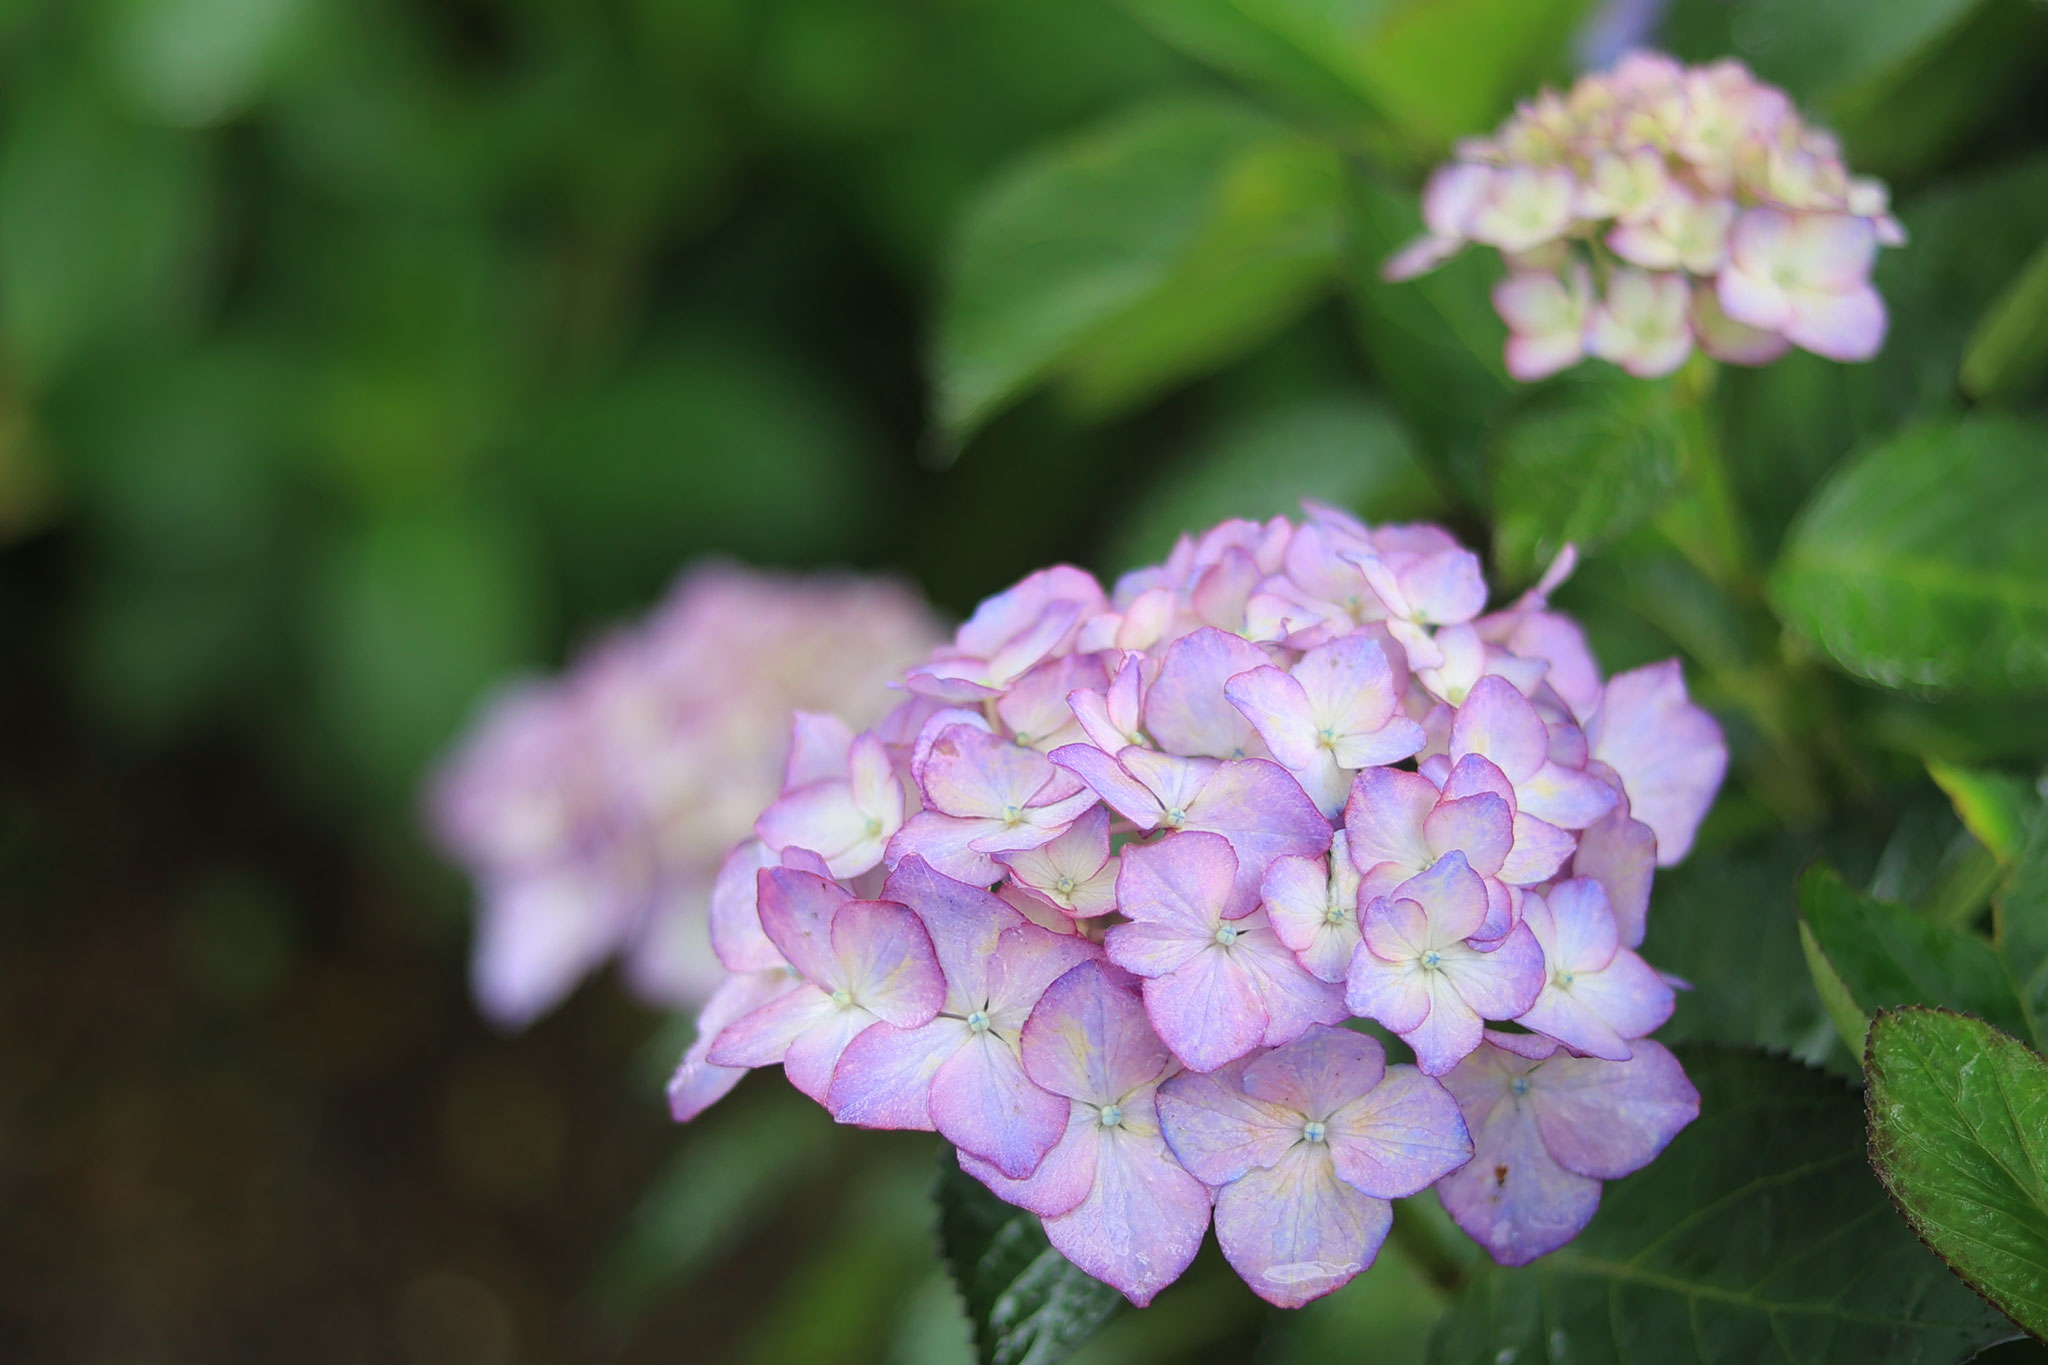 かのやばら園に咲く様々な紫陽花たち ①(6月11日 鹿屋市)